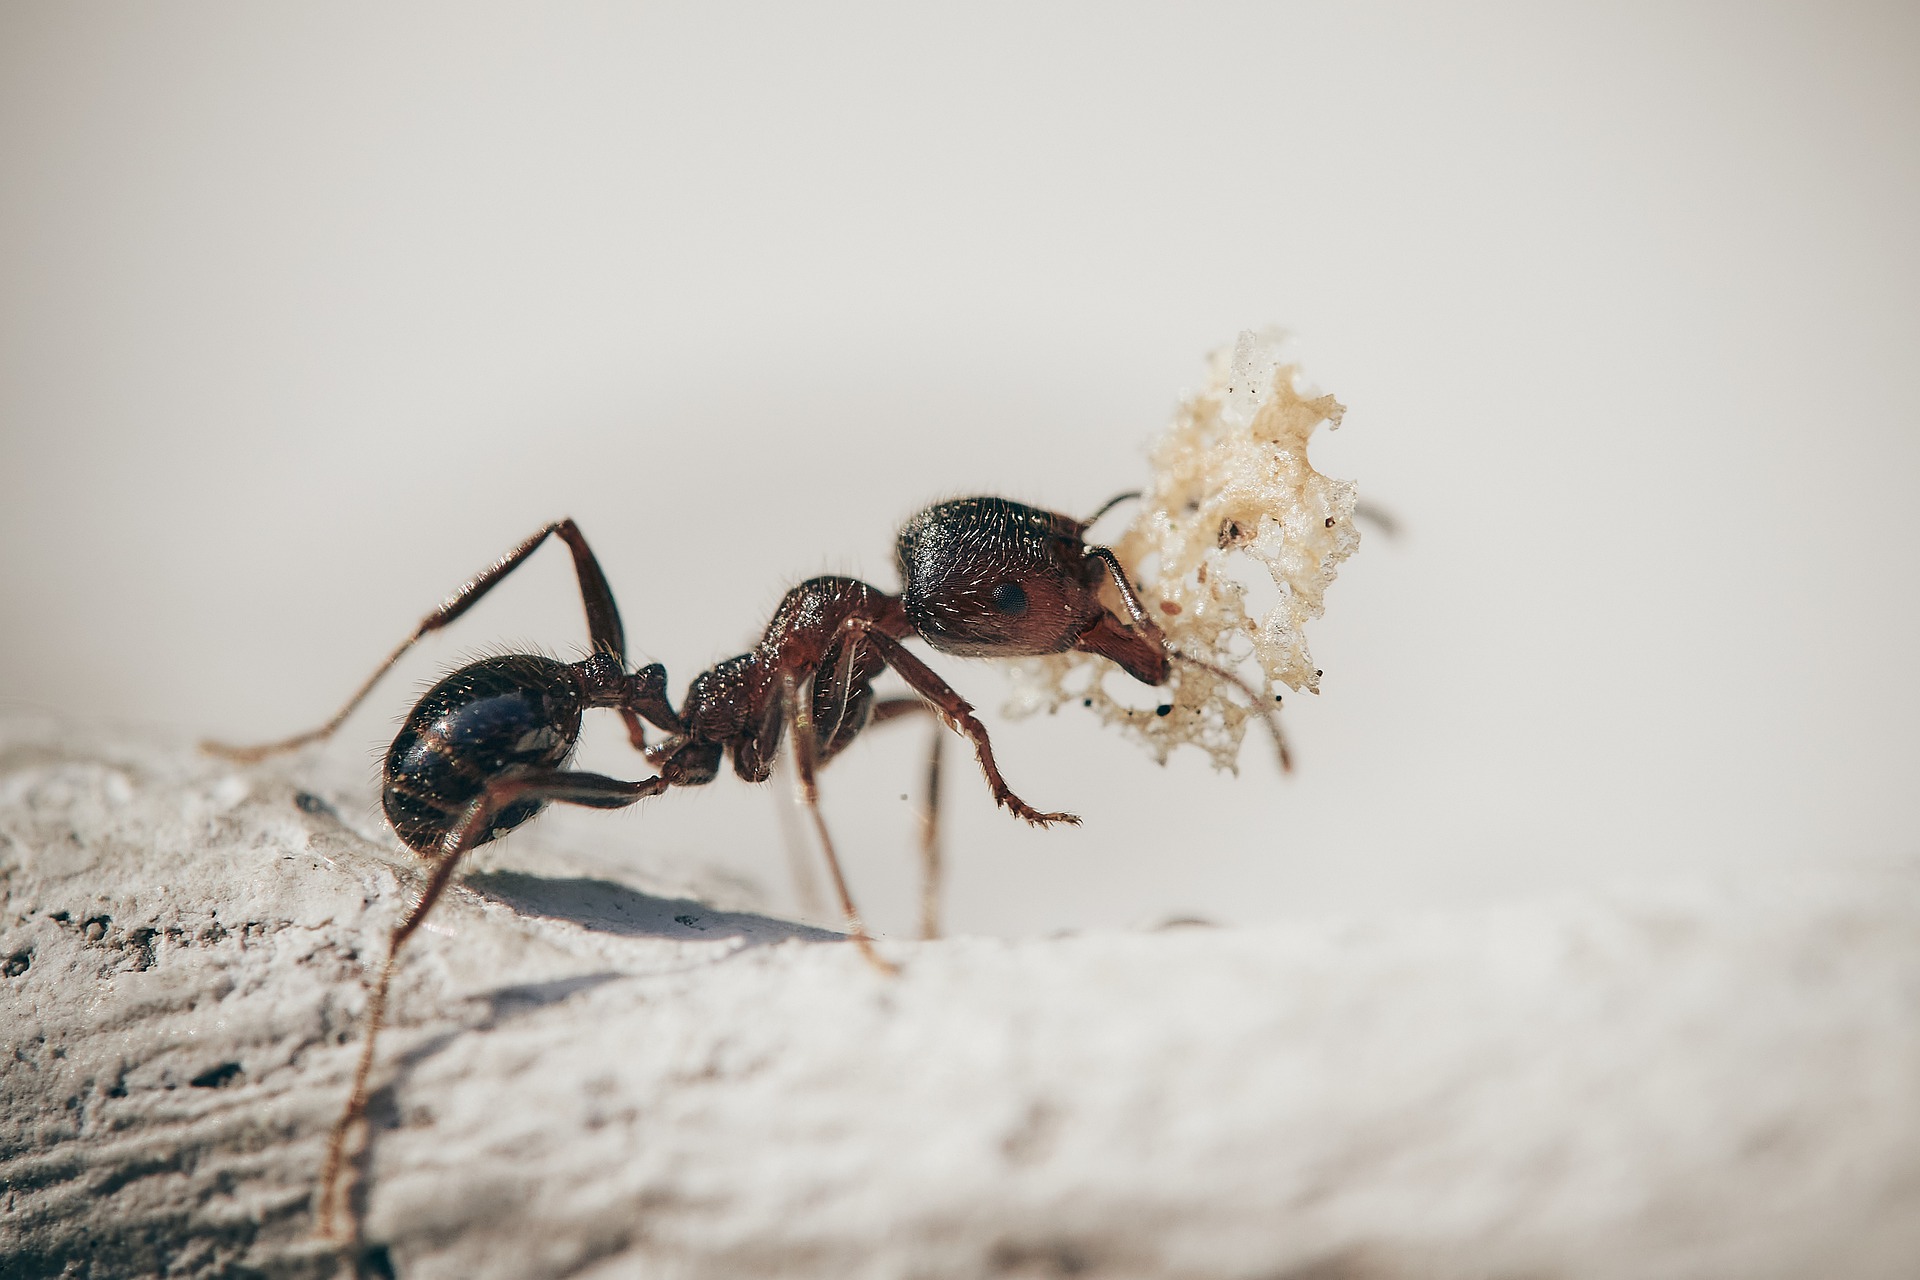 Esbrineu si una formiga és un vertebrat o un invertebrat